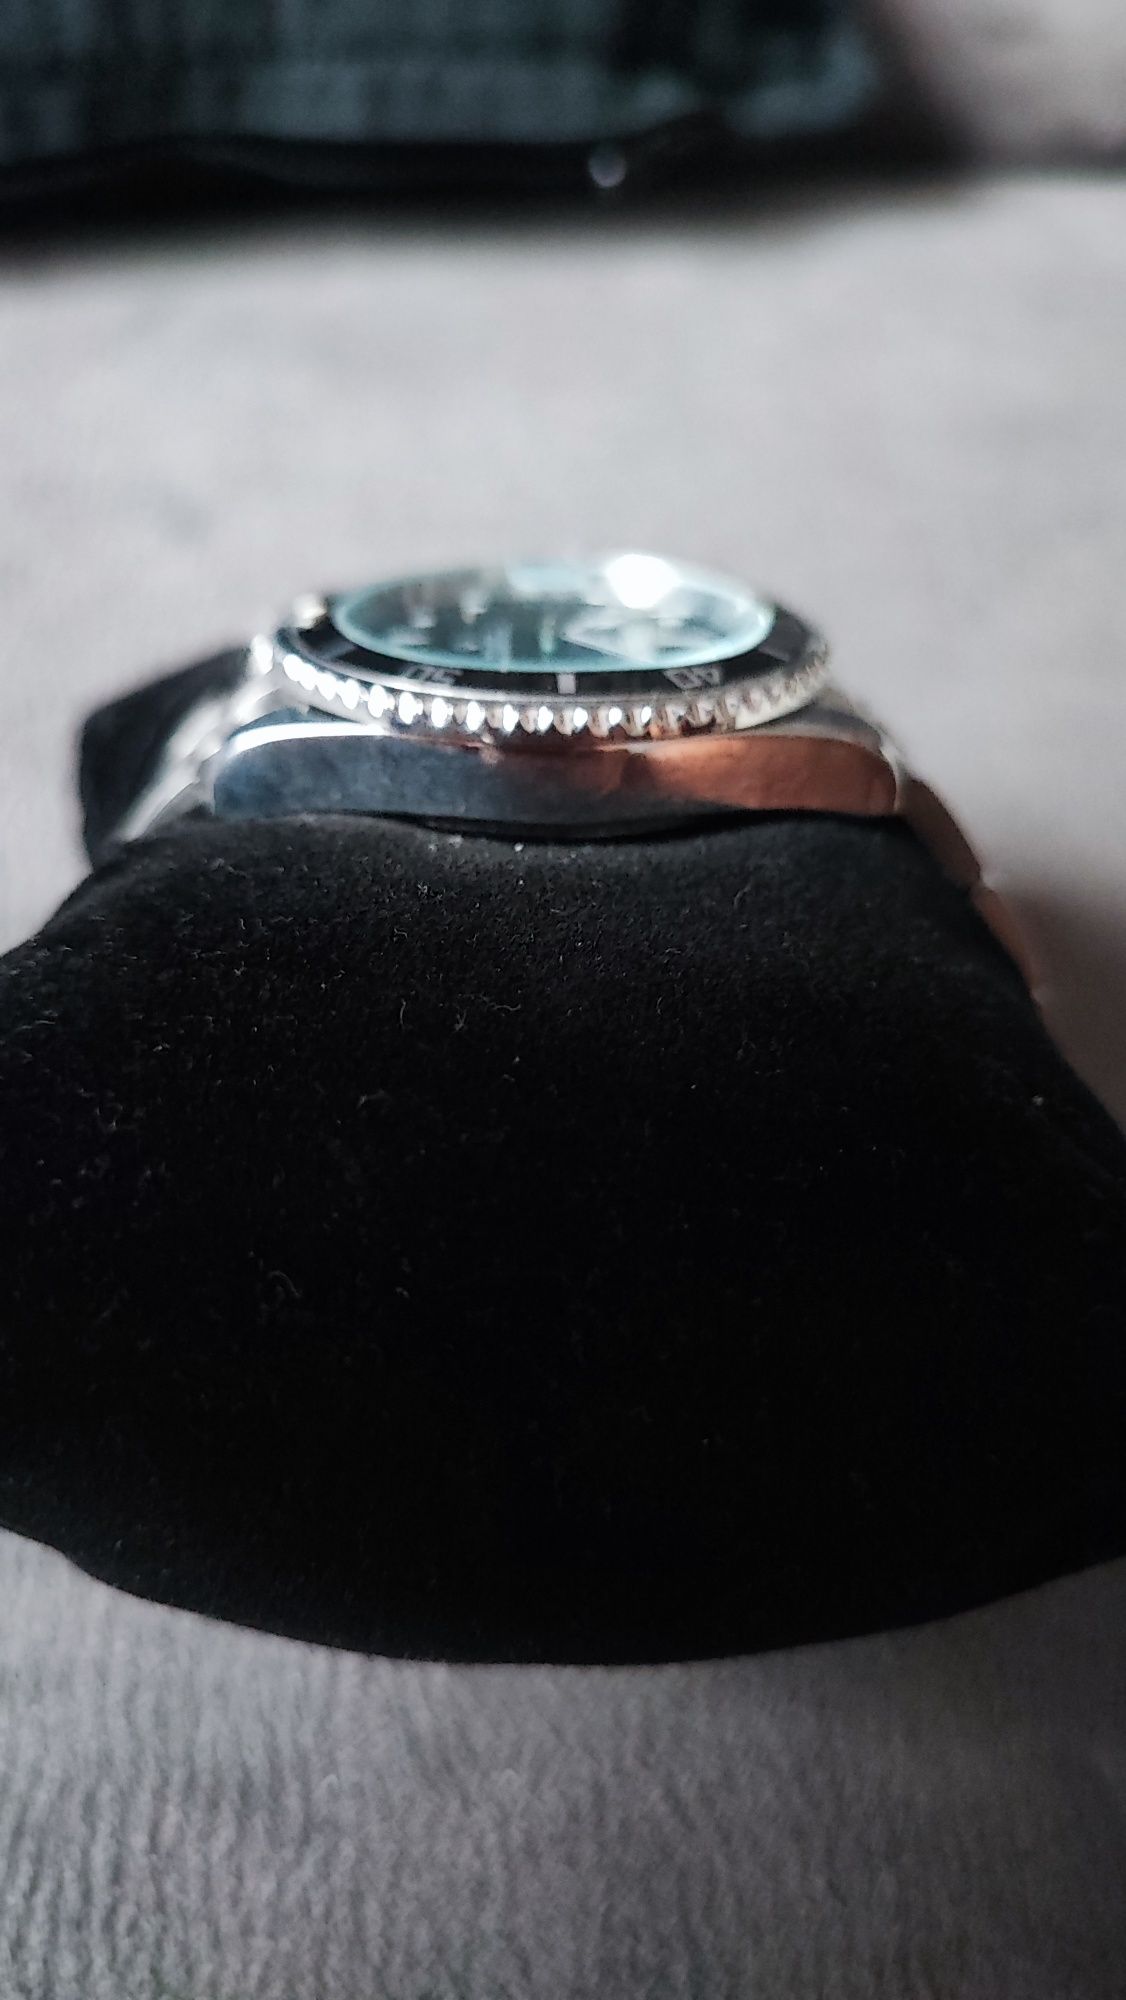 Relógio preto com braçadeira em metal